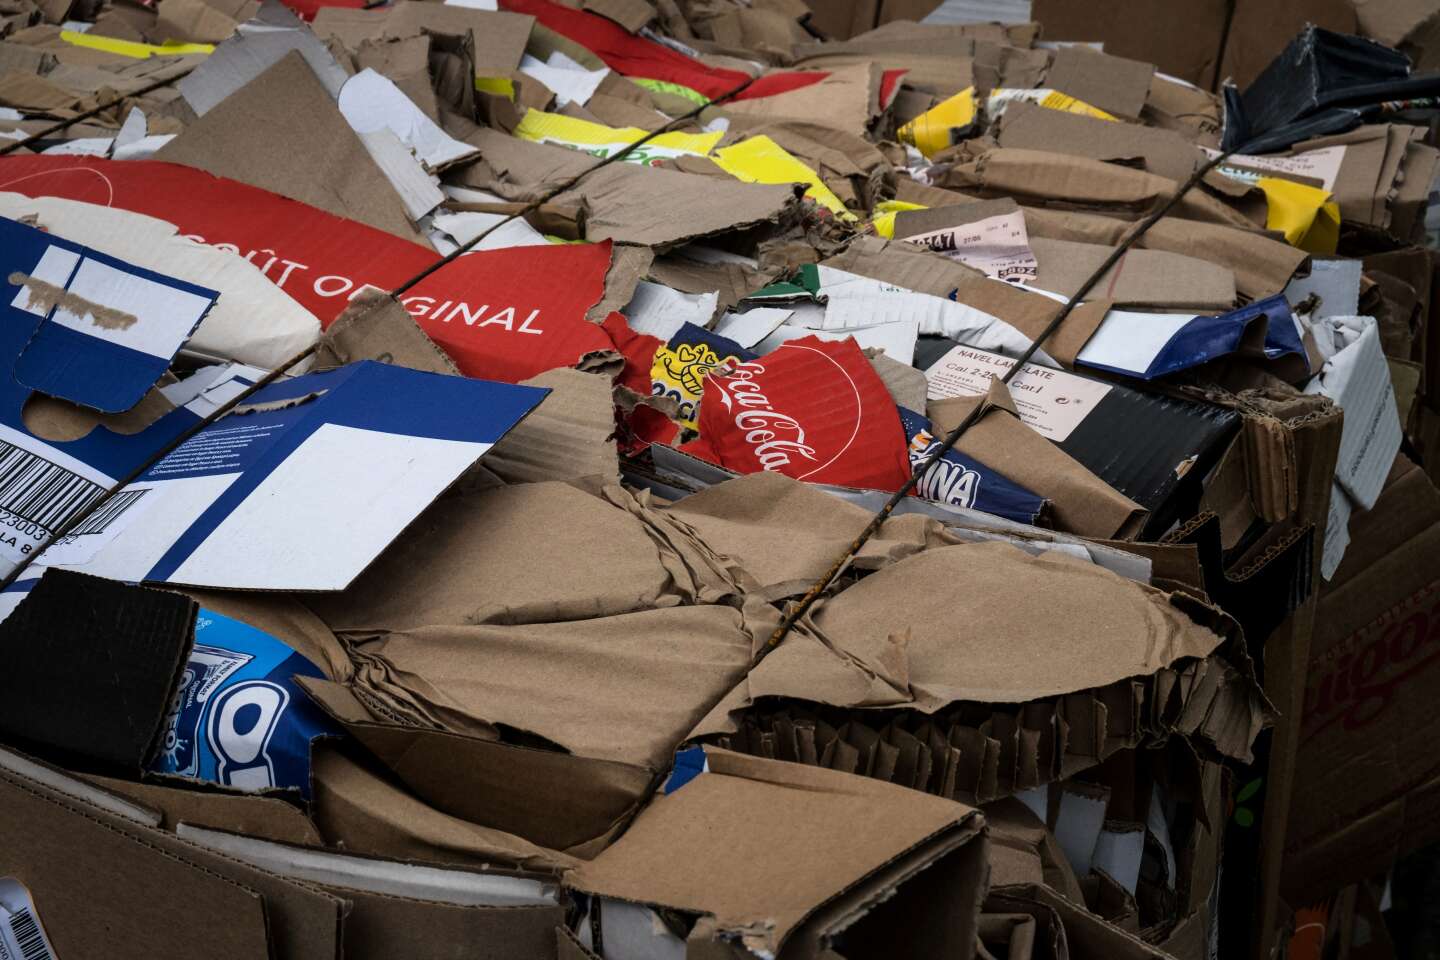 Les déchets d’emballage battent des records en Europe